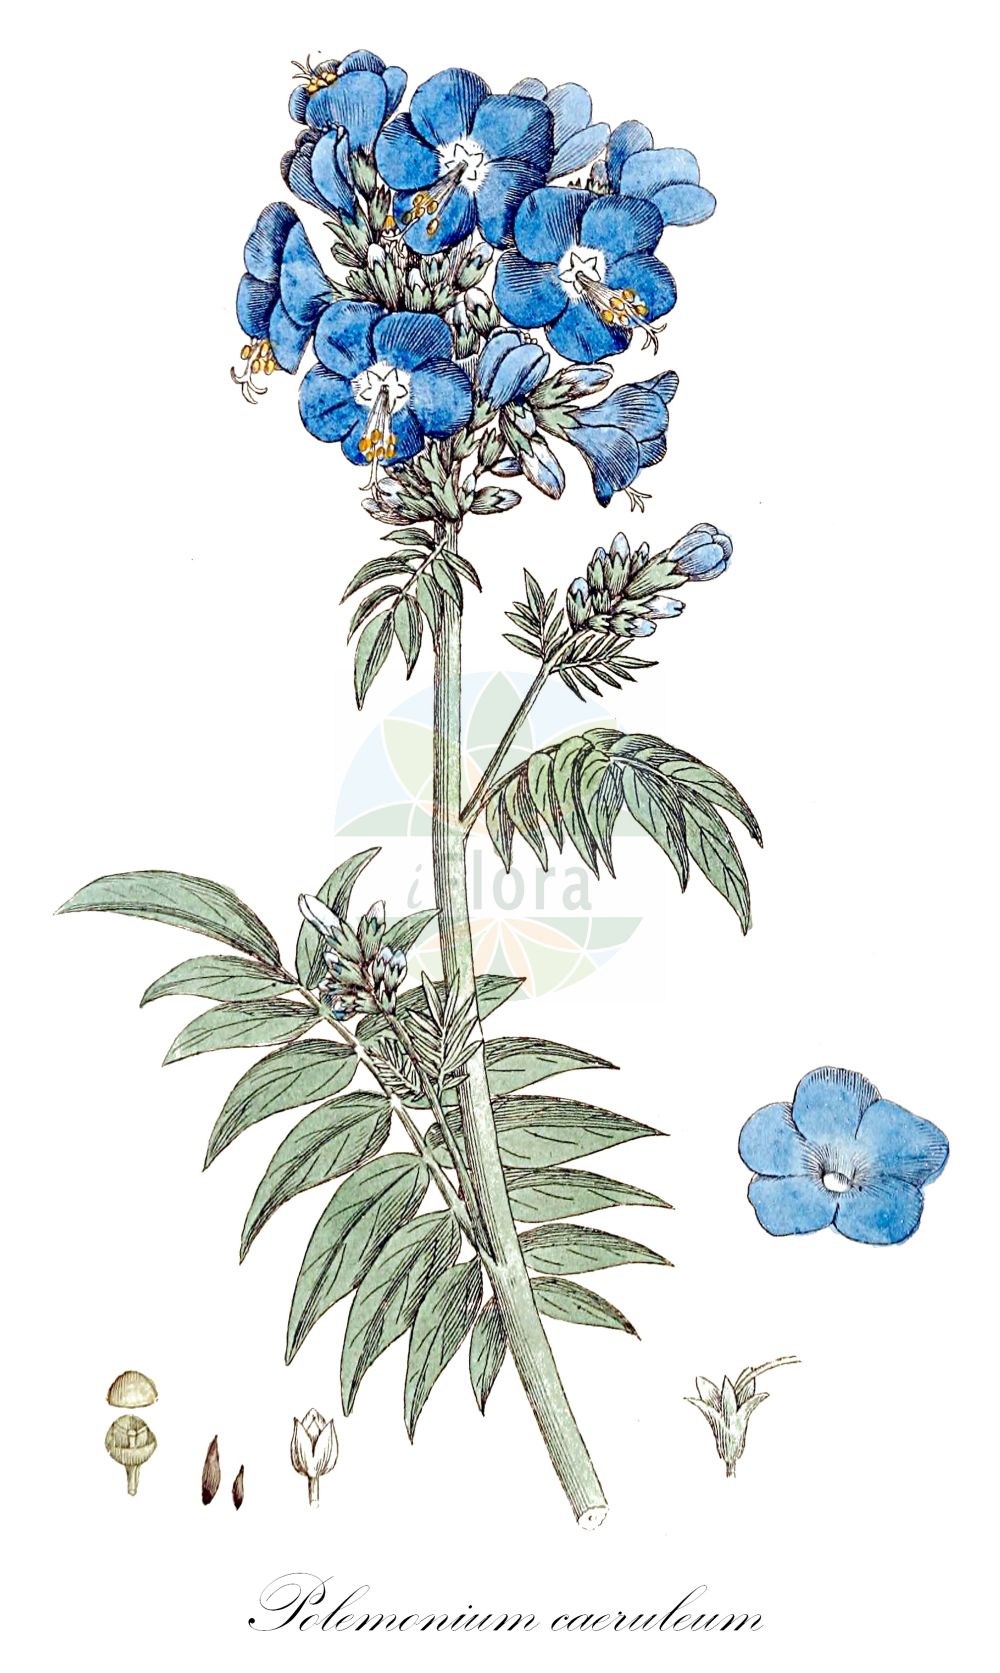 Historische Abbildung von Polemonium caeruleum (Blaue Himmelsleiter - Jacob's-ladder). Das Bild zeigt Blatt, Bluete, Frucht und Same. ---- Historical Drawing of Polemonium caeruleum (Blaue Himmelsleiter - Jacob's-ladder). The image is showing leaf, flower, fruit and seed.(Polemonium caeruleum,Blaue Himmelsleiter,Jacob's-ladder,Polemonium caeruleum,Polemonium caucasicum,Blaue Himmelsleiter,Blaues Sperrkraut,Jacob's-ladder,Blue Jacob's Ladder,Charity,Tall Jacob's-ladder,Polemonium,Himmelsleiter,Jacob's-ladder,Polemoniaceae,Himmelsleitergewächse,Phlox family,Blatt,Bluete,Frucht,Same,leaf,flower,fruit,seed,Svensk Botanik (Svensk Botanik))